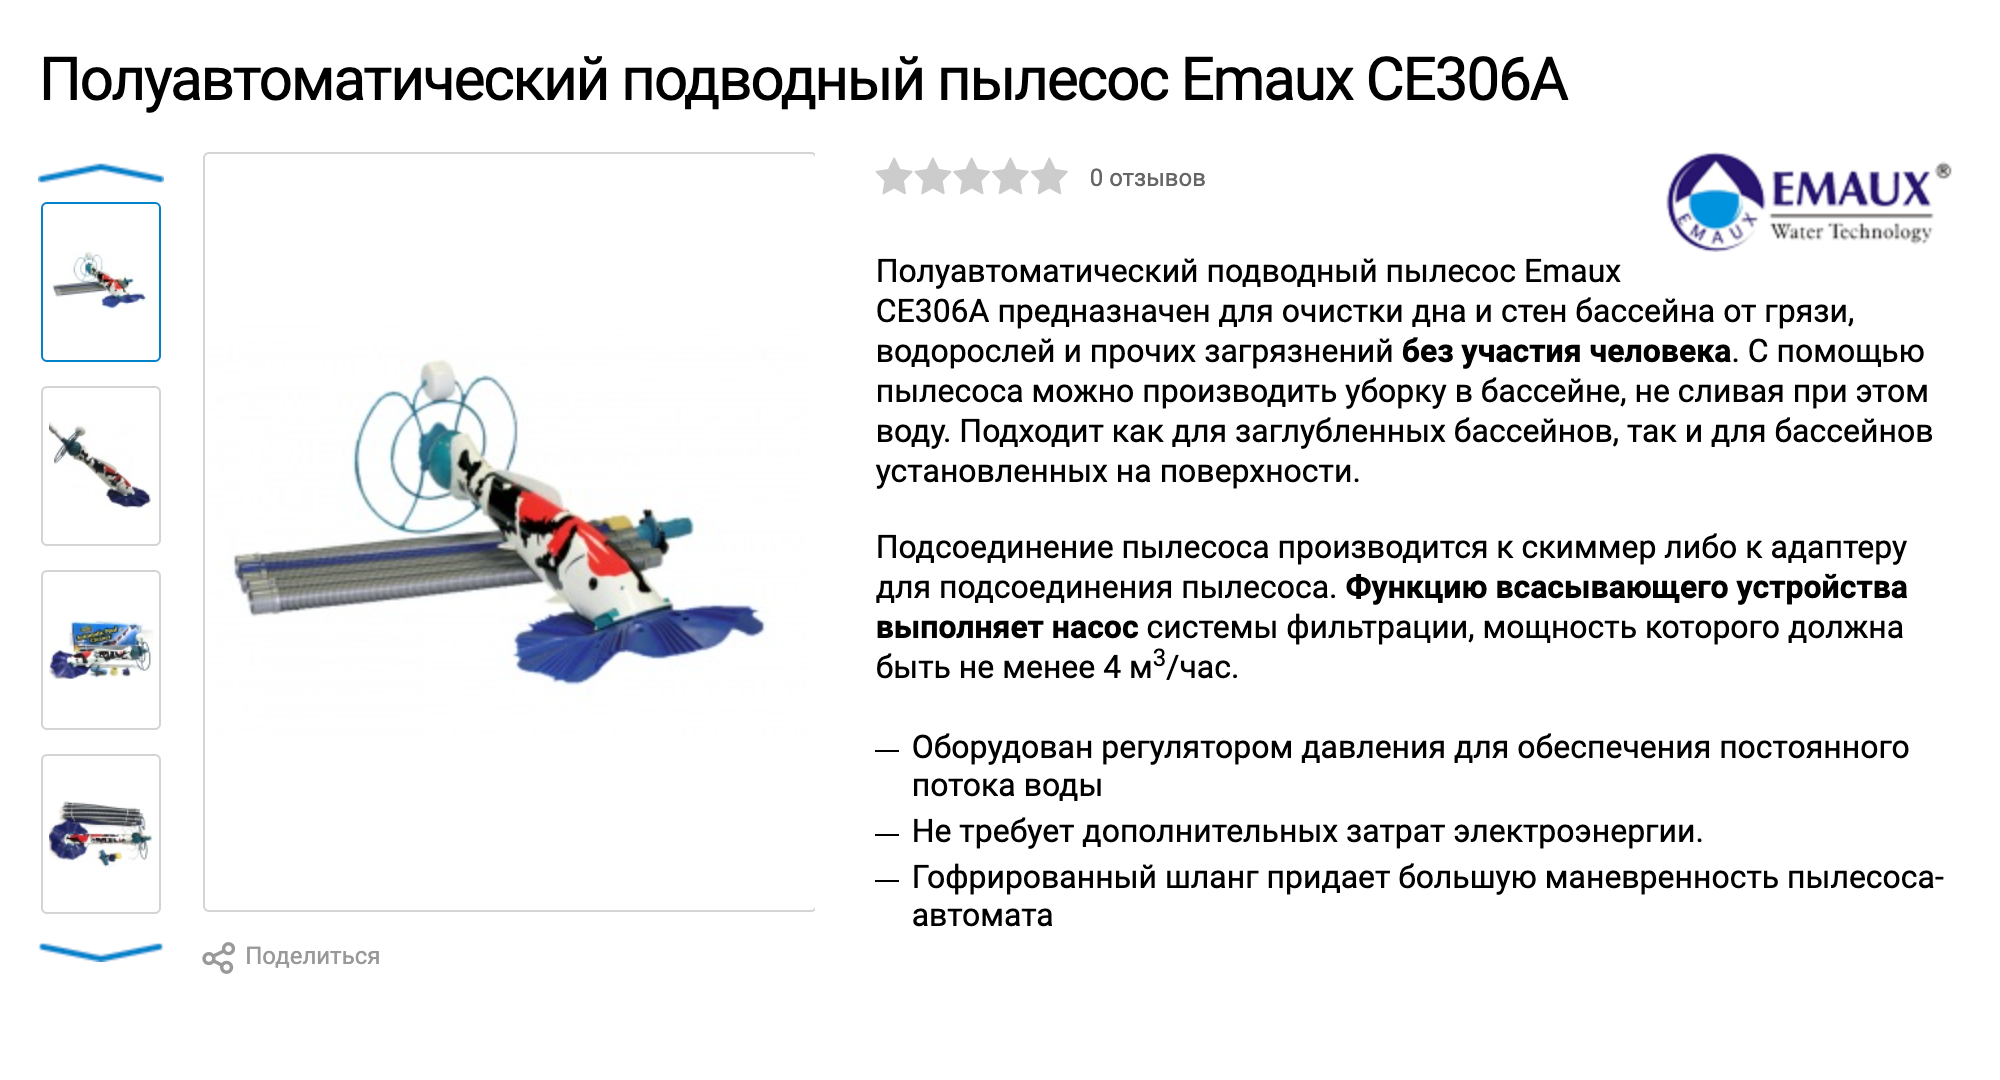 Пылесос-полуавтомат Emaux за 11 700 ₽ считается бюджетным. Источник: bassein-servis.ru